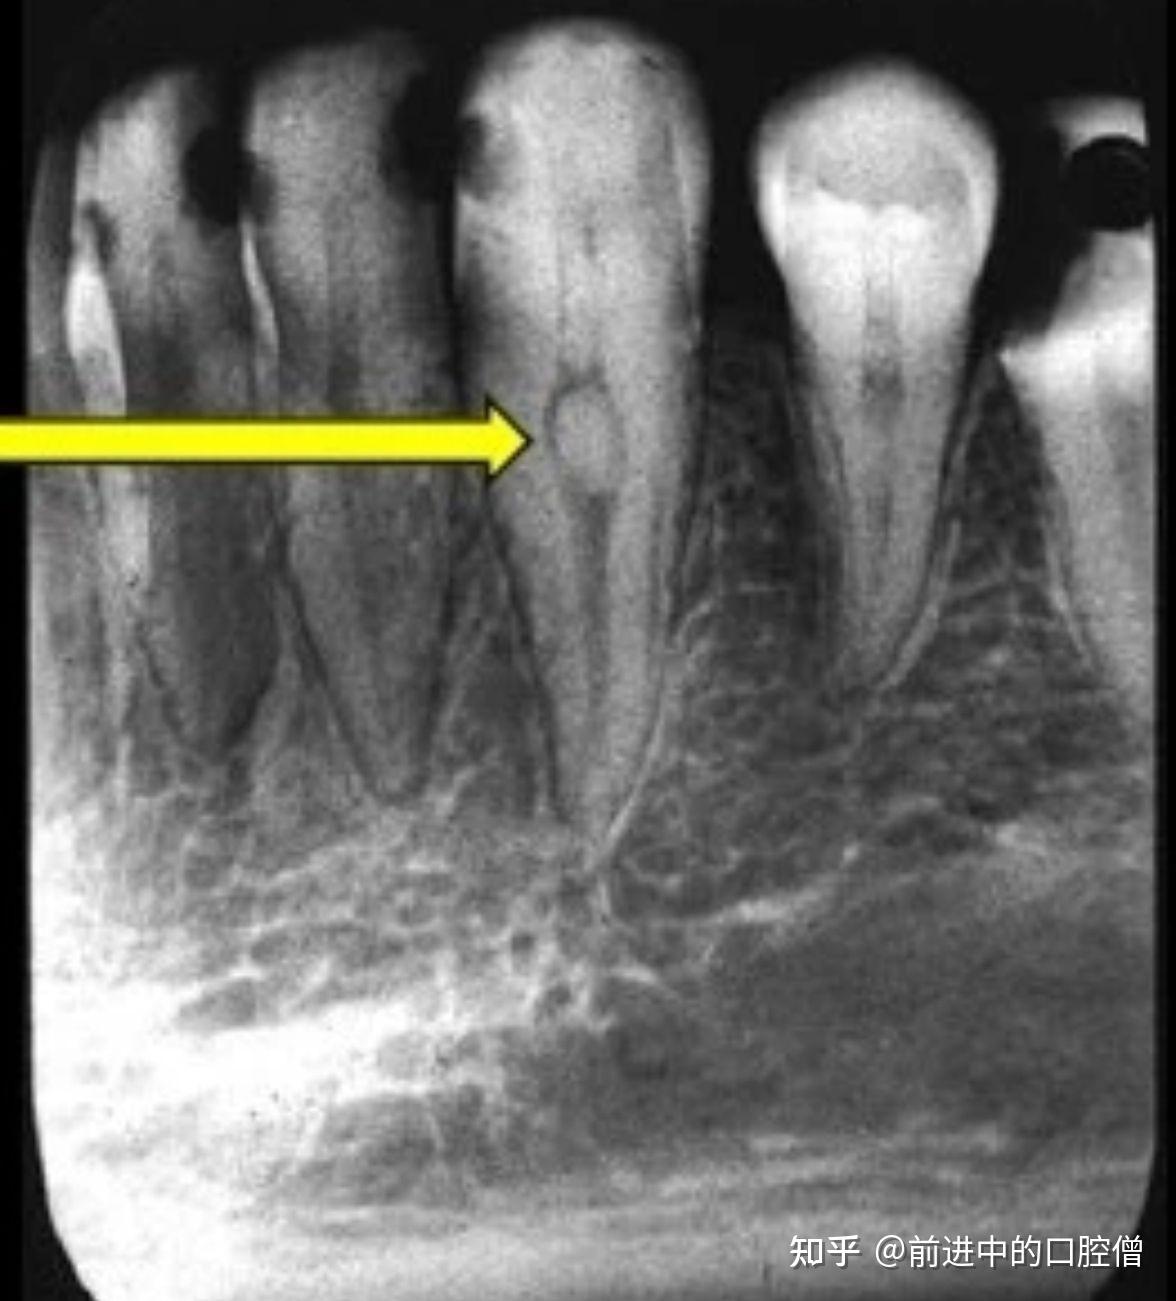 一例牙髓坏死原因的探讨